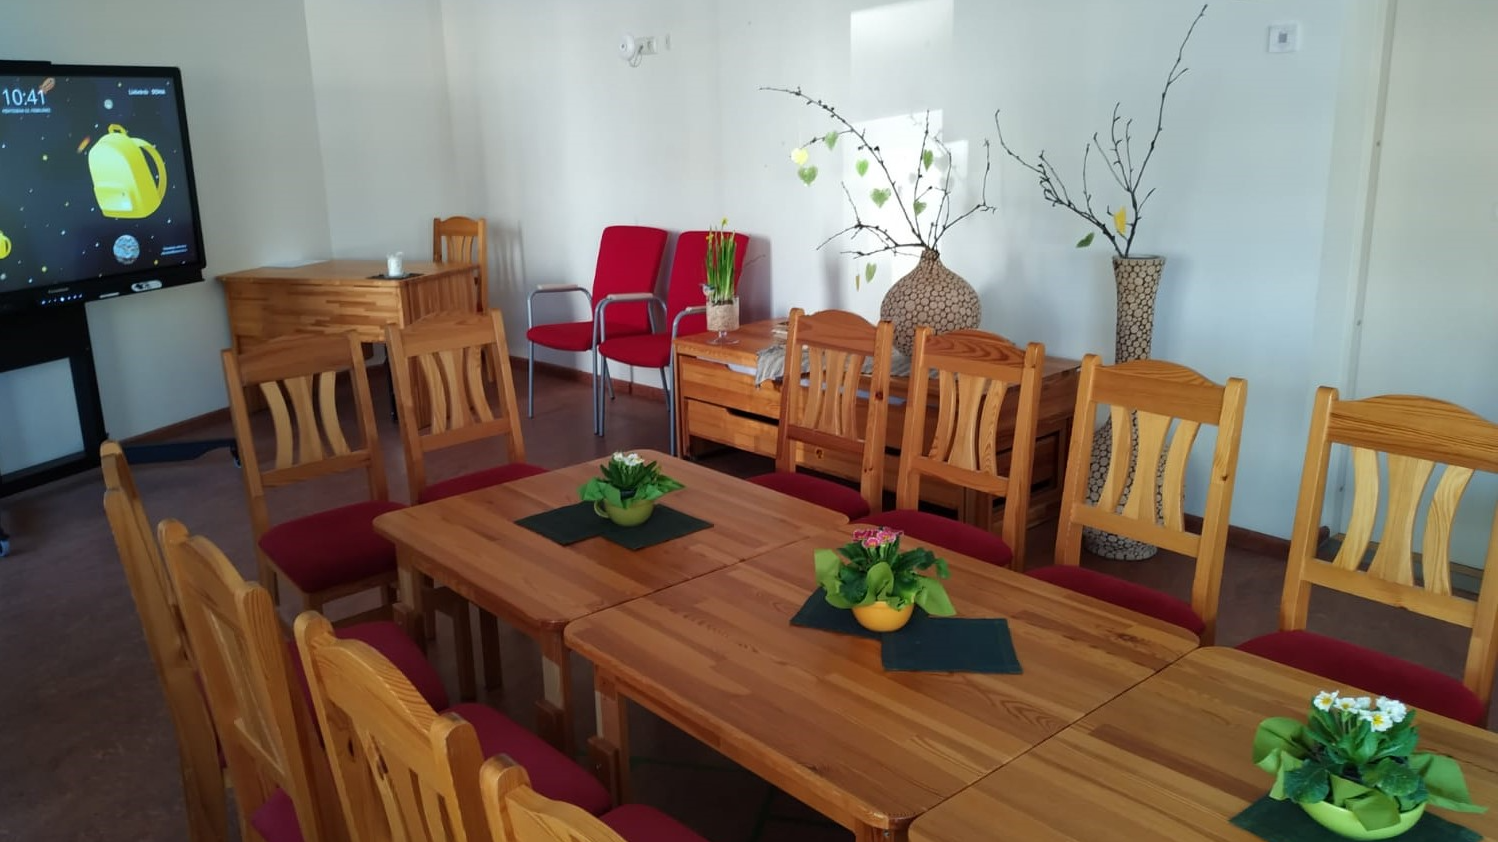 Rīgas 275. pirmsskolas izglītības iestādes “Austriņa” pasākuma telpa ar koka galdu, krēsliem un ekrānu